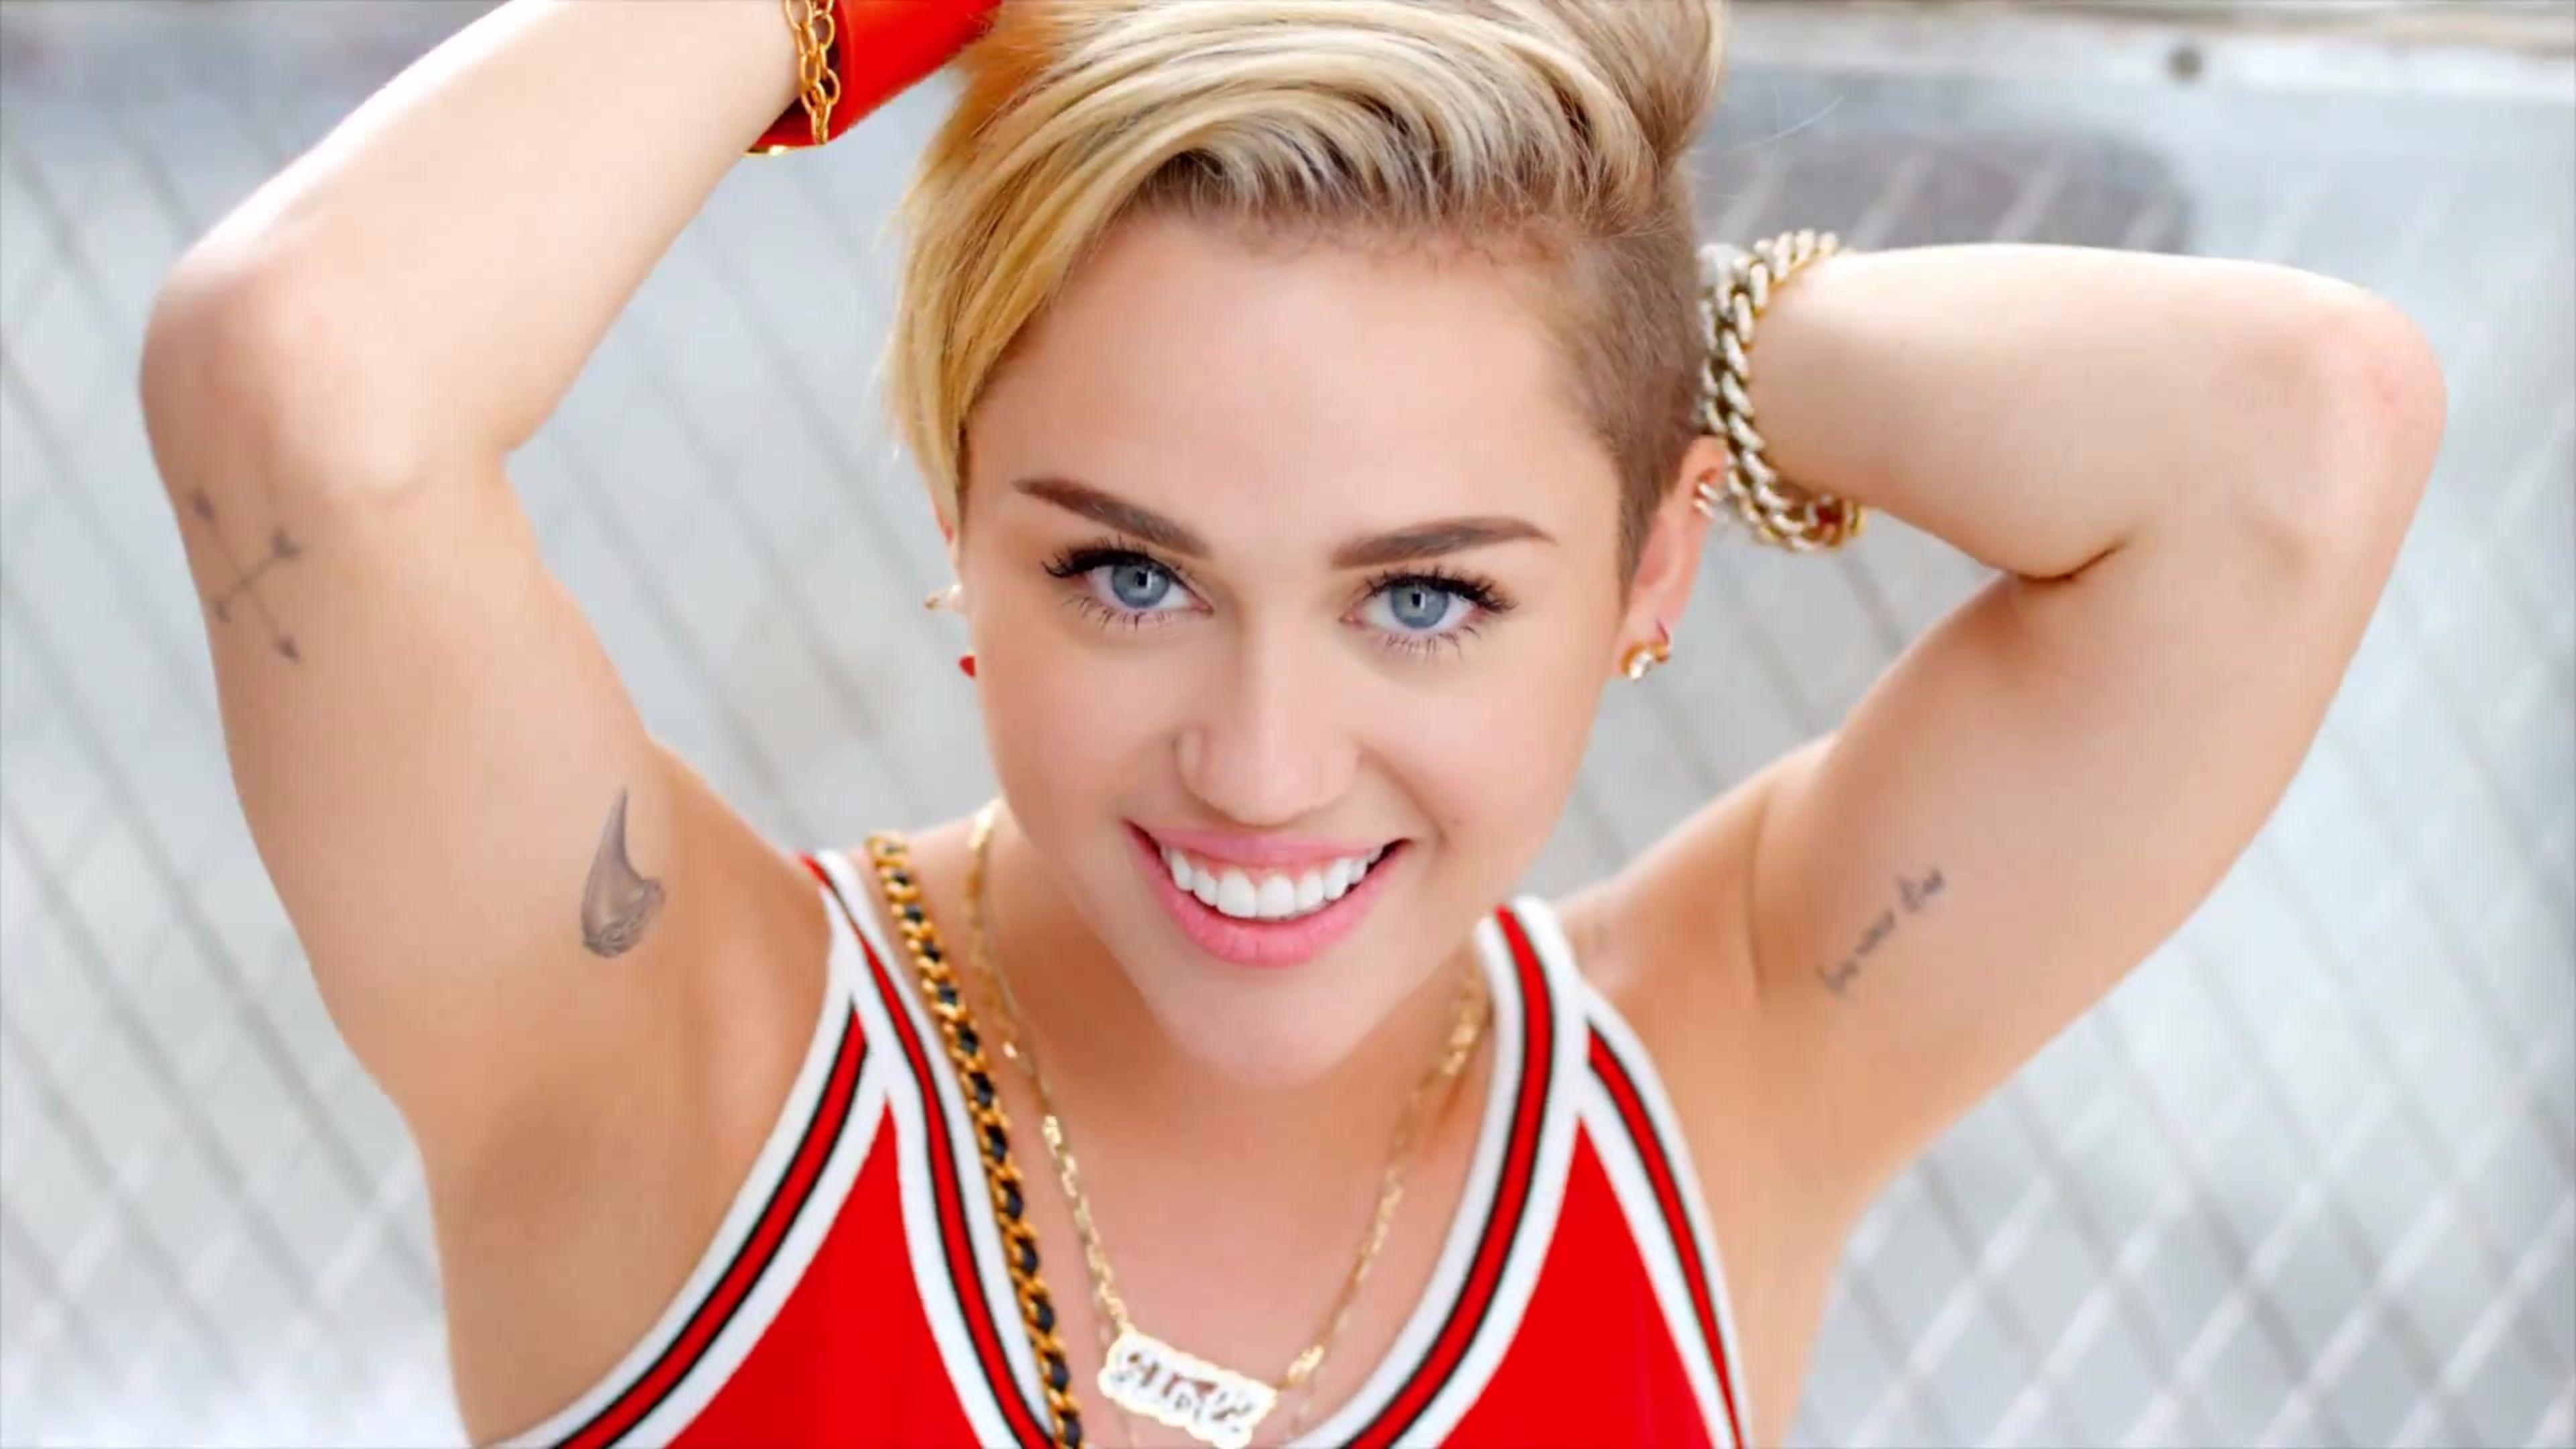 Free Miley Cyrus 4K Wallpaper. Free 4K Wallpaper